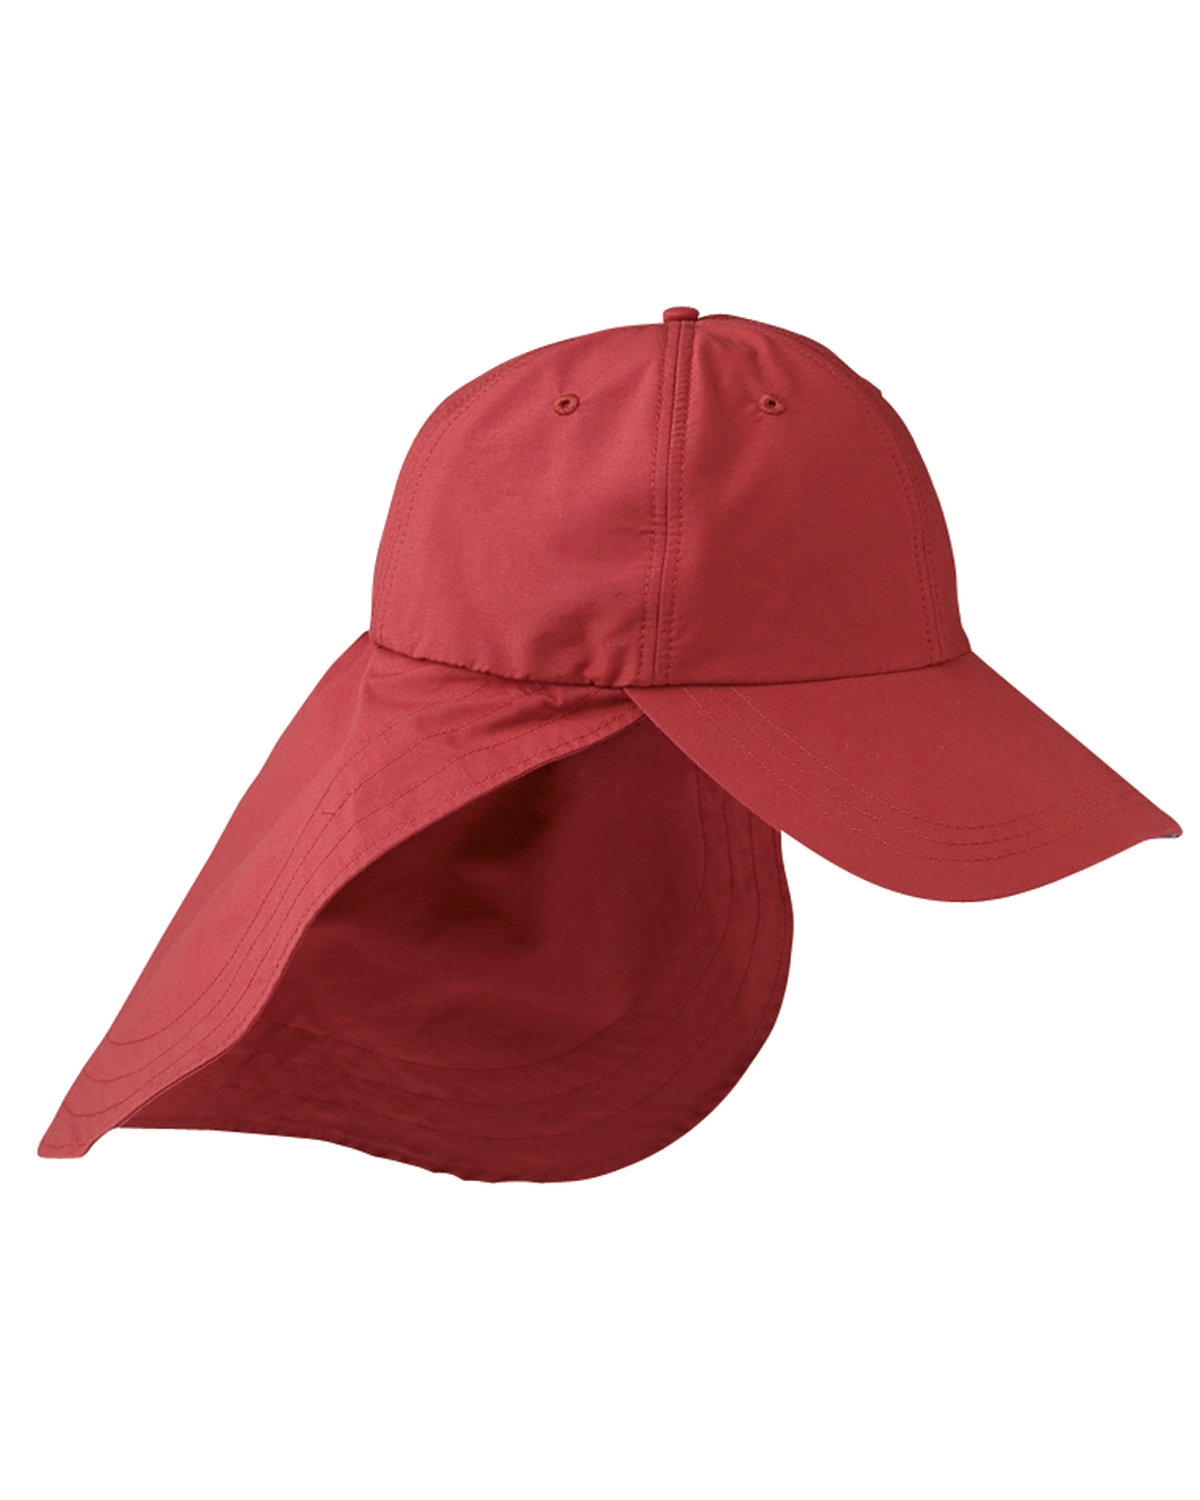 Adams Extreme Outdoor  Sun-Block Cap Hat w/ Neck Cape & Clip Cord 4" Bill 